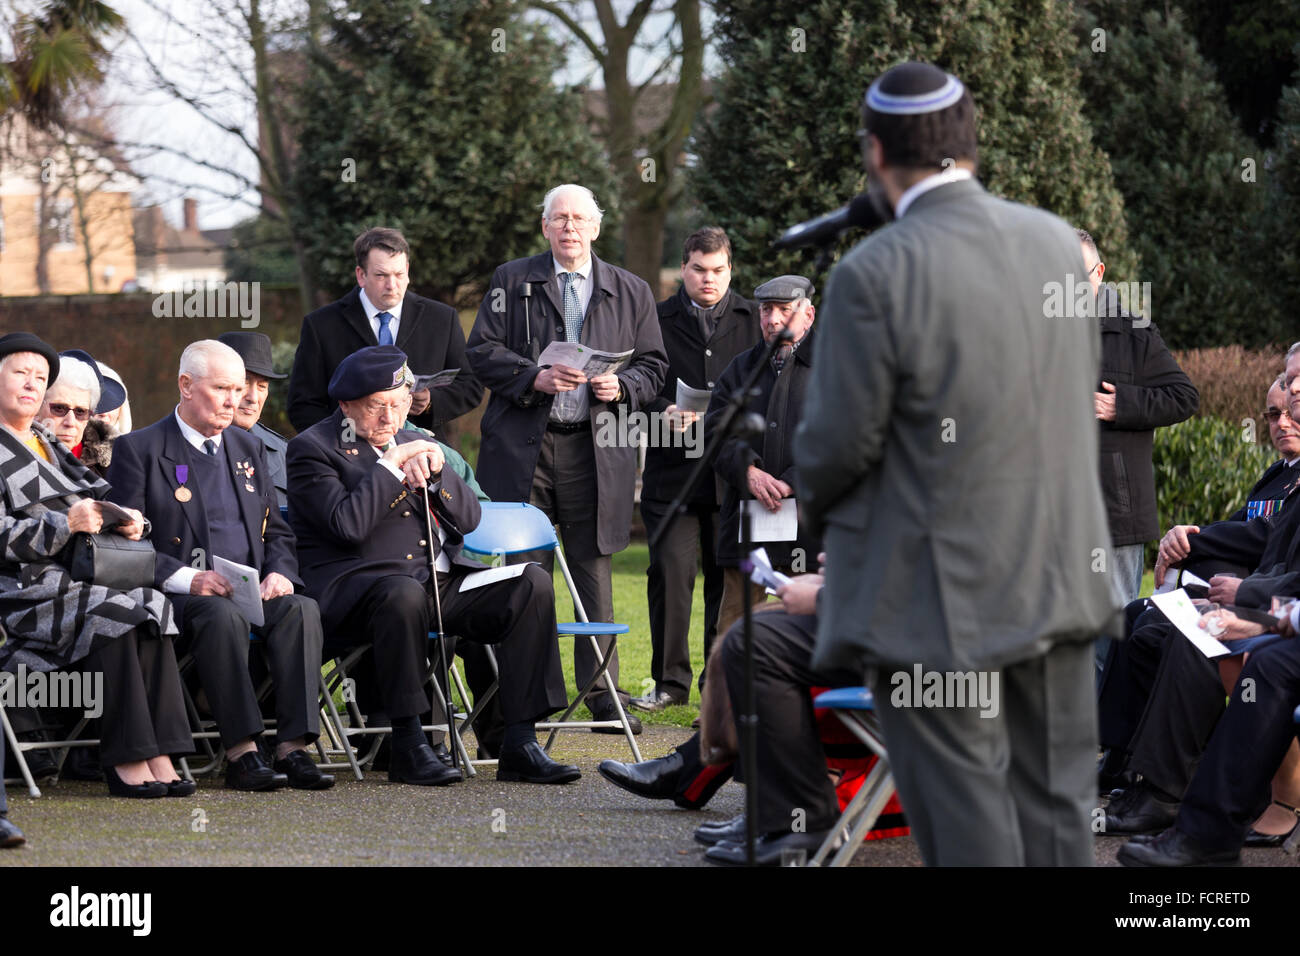 Romford, Essex, England. 24. Januar 2016. Die Leute zahlen ihren Respekt an einer Gedenkfeier in Krönung Gärten, Romford zum Holocaust-Gedenktag zu gedenken, die am 27. Januar 2016 fällt. Bildnachweis: London Pix/Alamy Live News Stockfoto